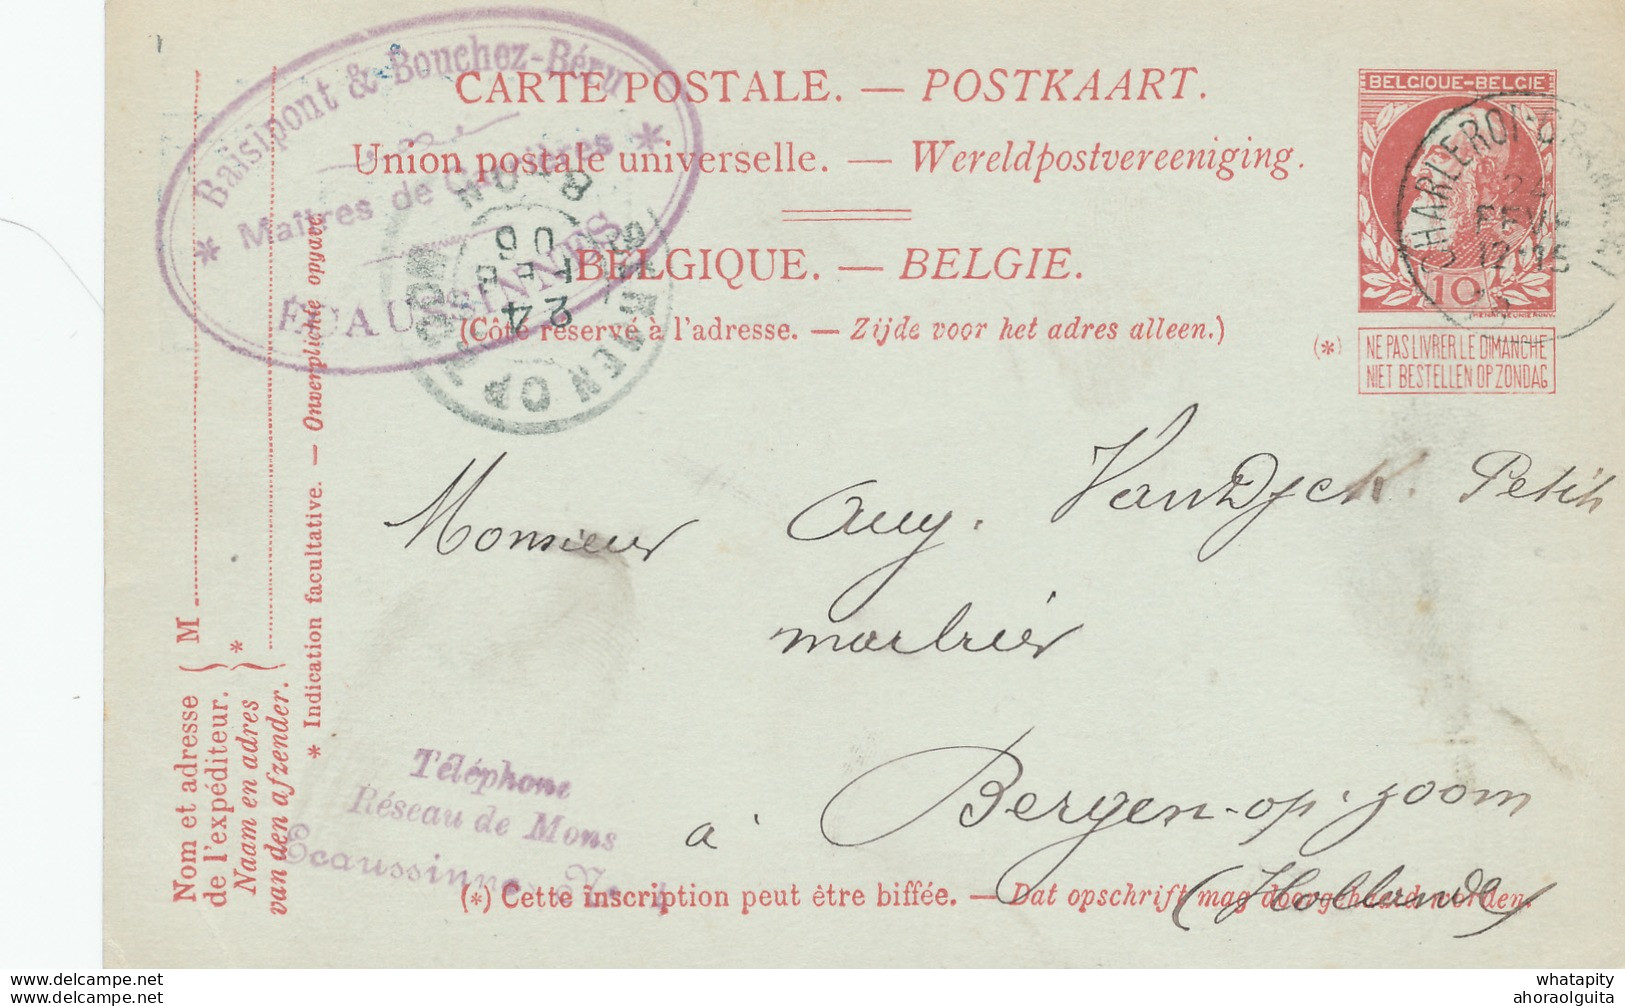 DDW704 - Entier Postal Grosse Barbe AMBULANT CHARLEROI-GRAMMONT 1906 - Cachet Maitres De Forges à ECAUSSINNES - Bahnpoststempel